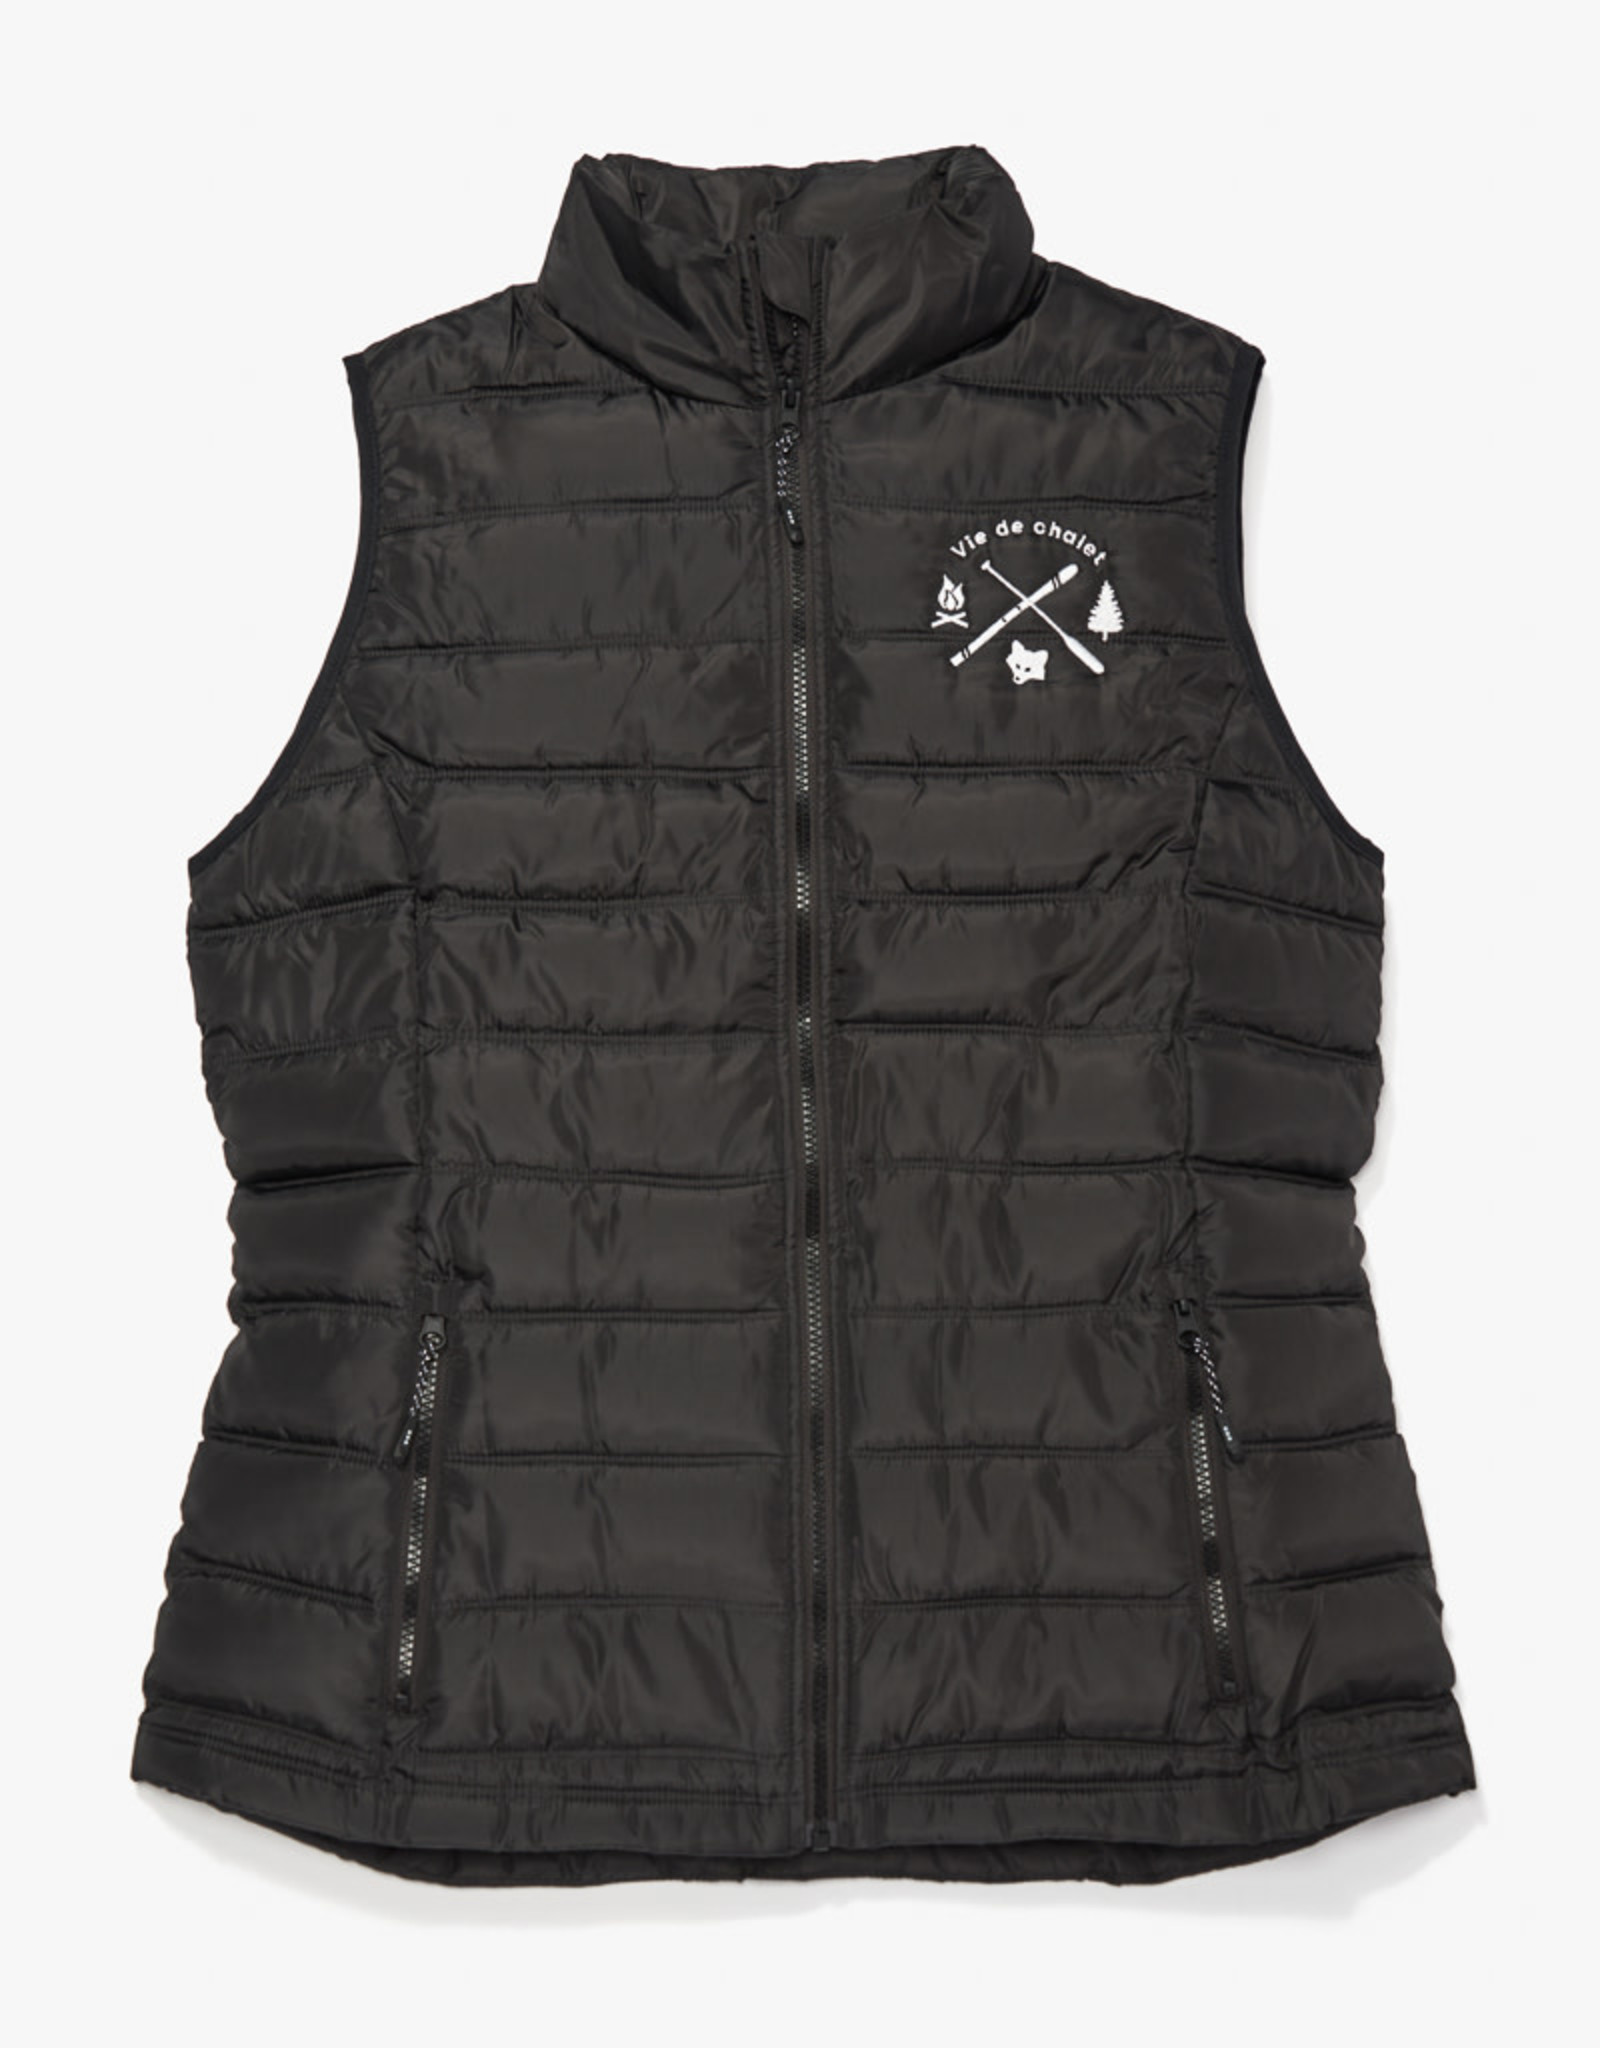 TRIMARK Women's insulated vest